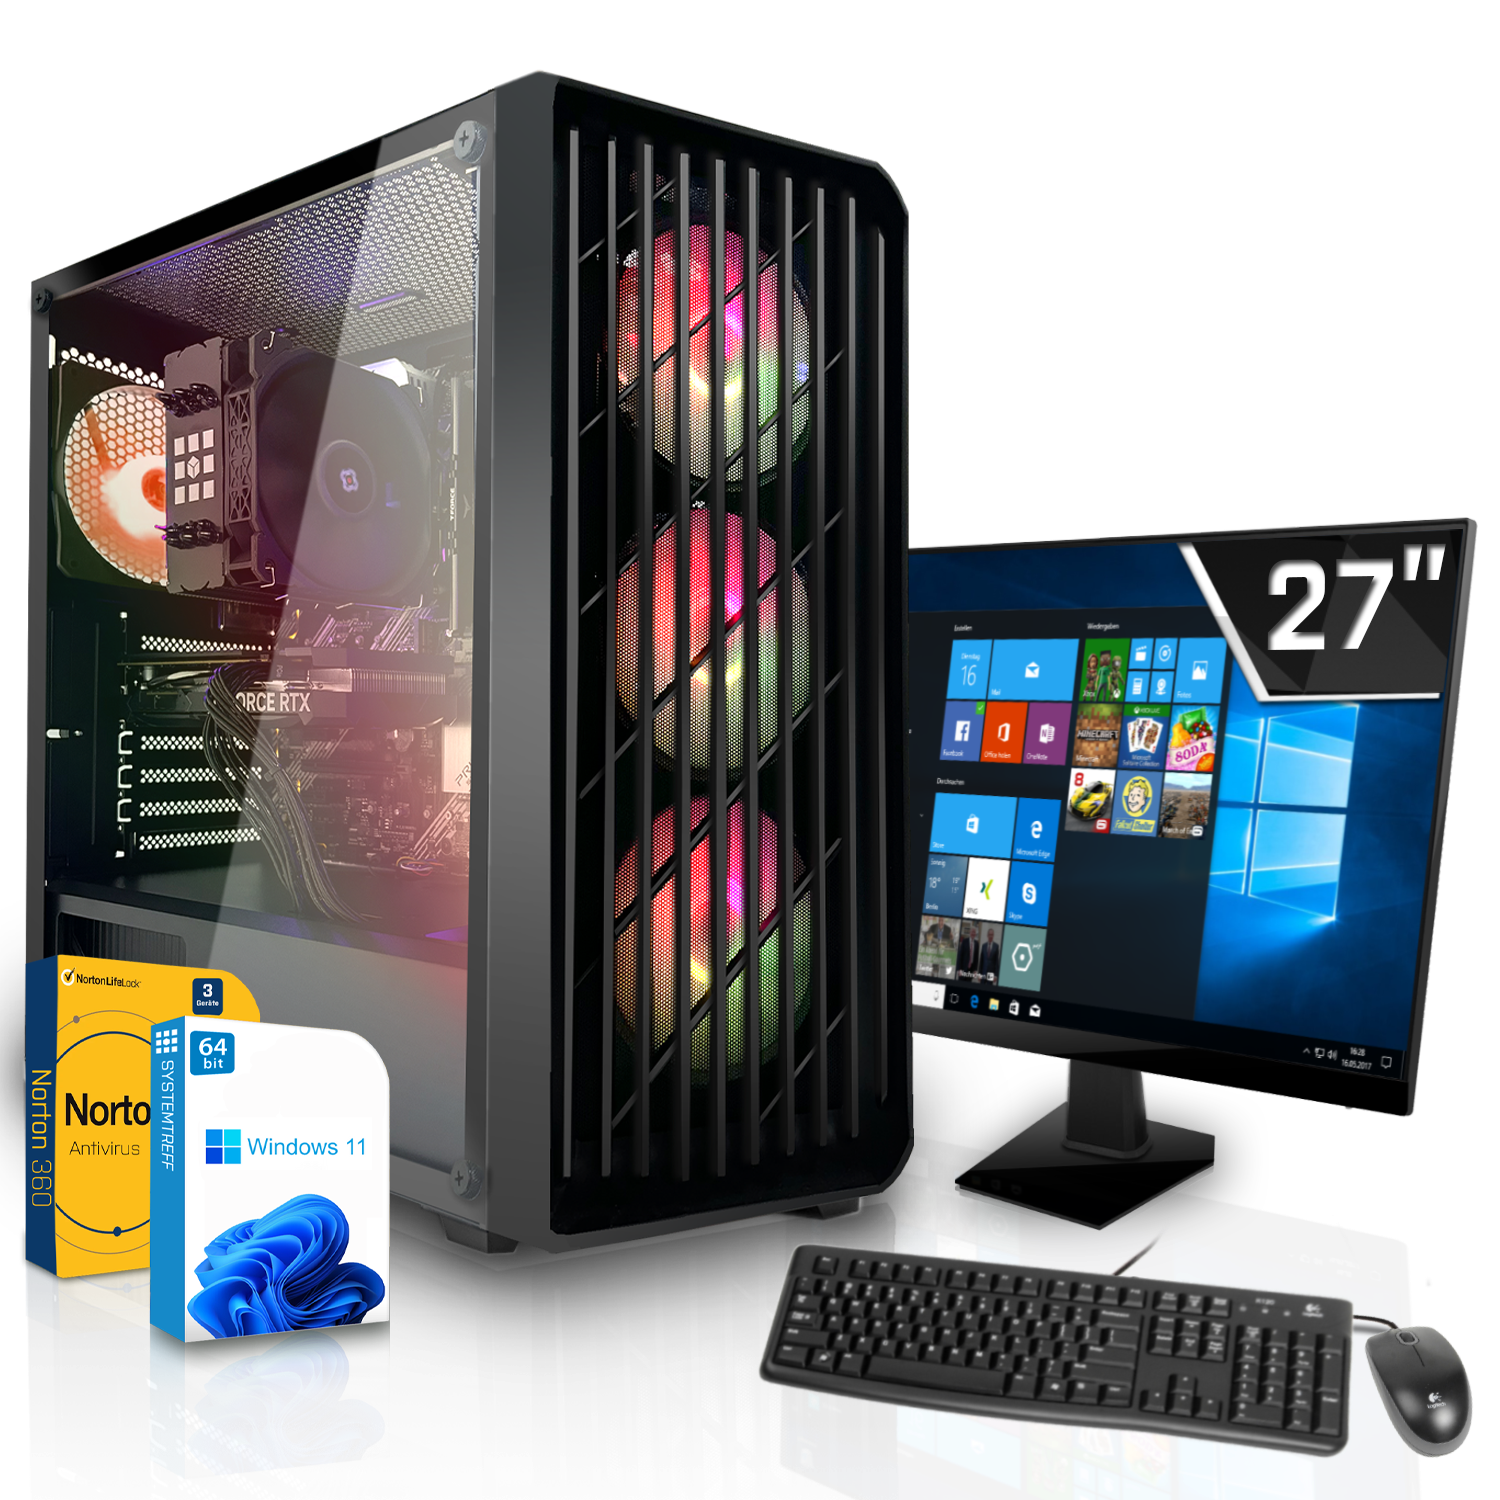 SYSTEMTREFF Gaming Komplett Intel 12GB GB i5-12600KF, 1000 GB RAM, Prozessor, GeForce 12 16 3060 Komplett RTX PC Core GB mSSD, mit i5-12600KF Nvidia GDDR6